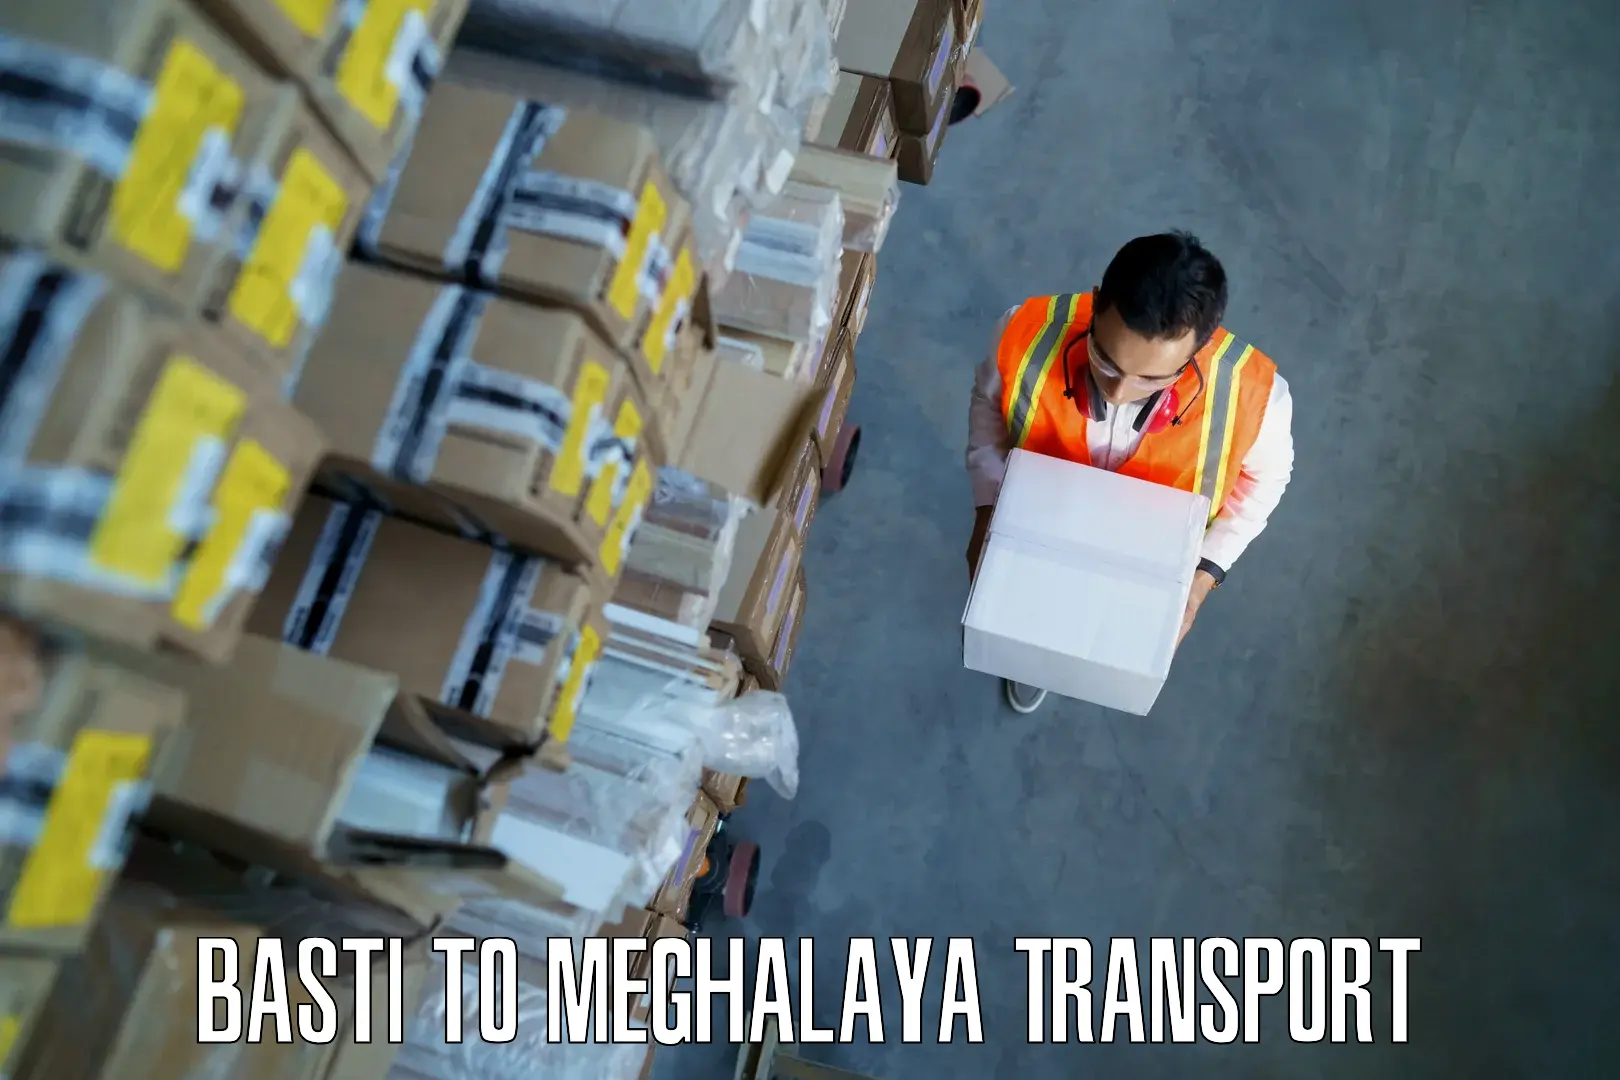 Delivery service Basti to Meghalaya